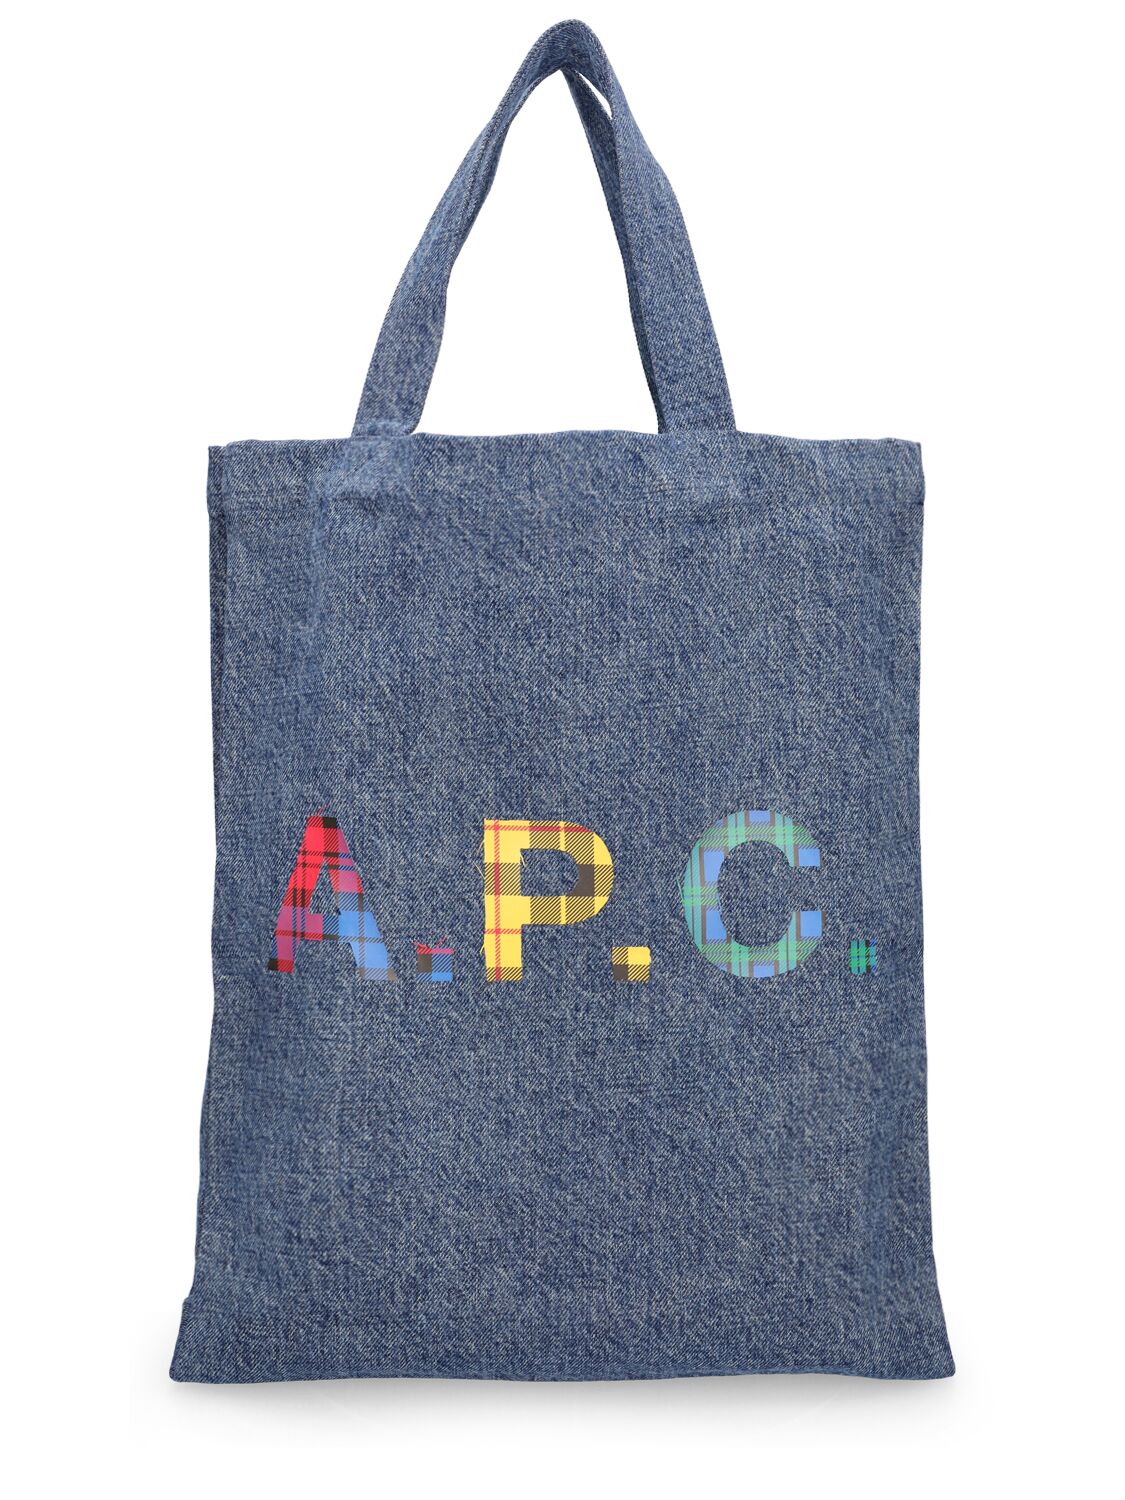 Apc Mini Lou Anses Canvas Tote Bag In Washed Indigo